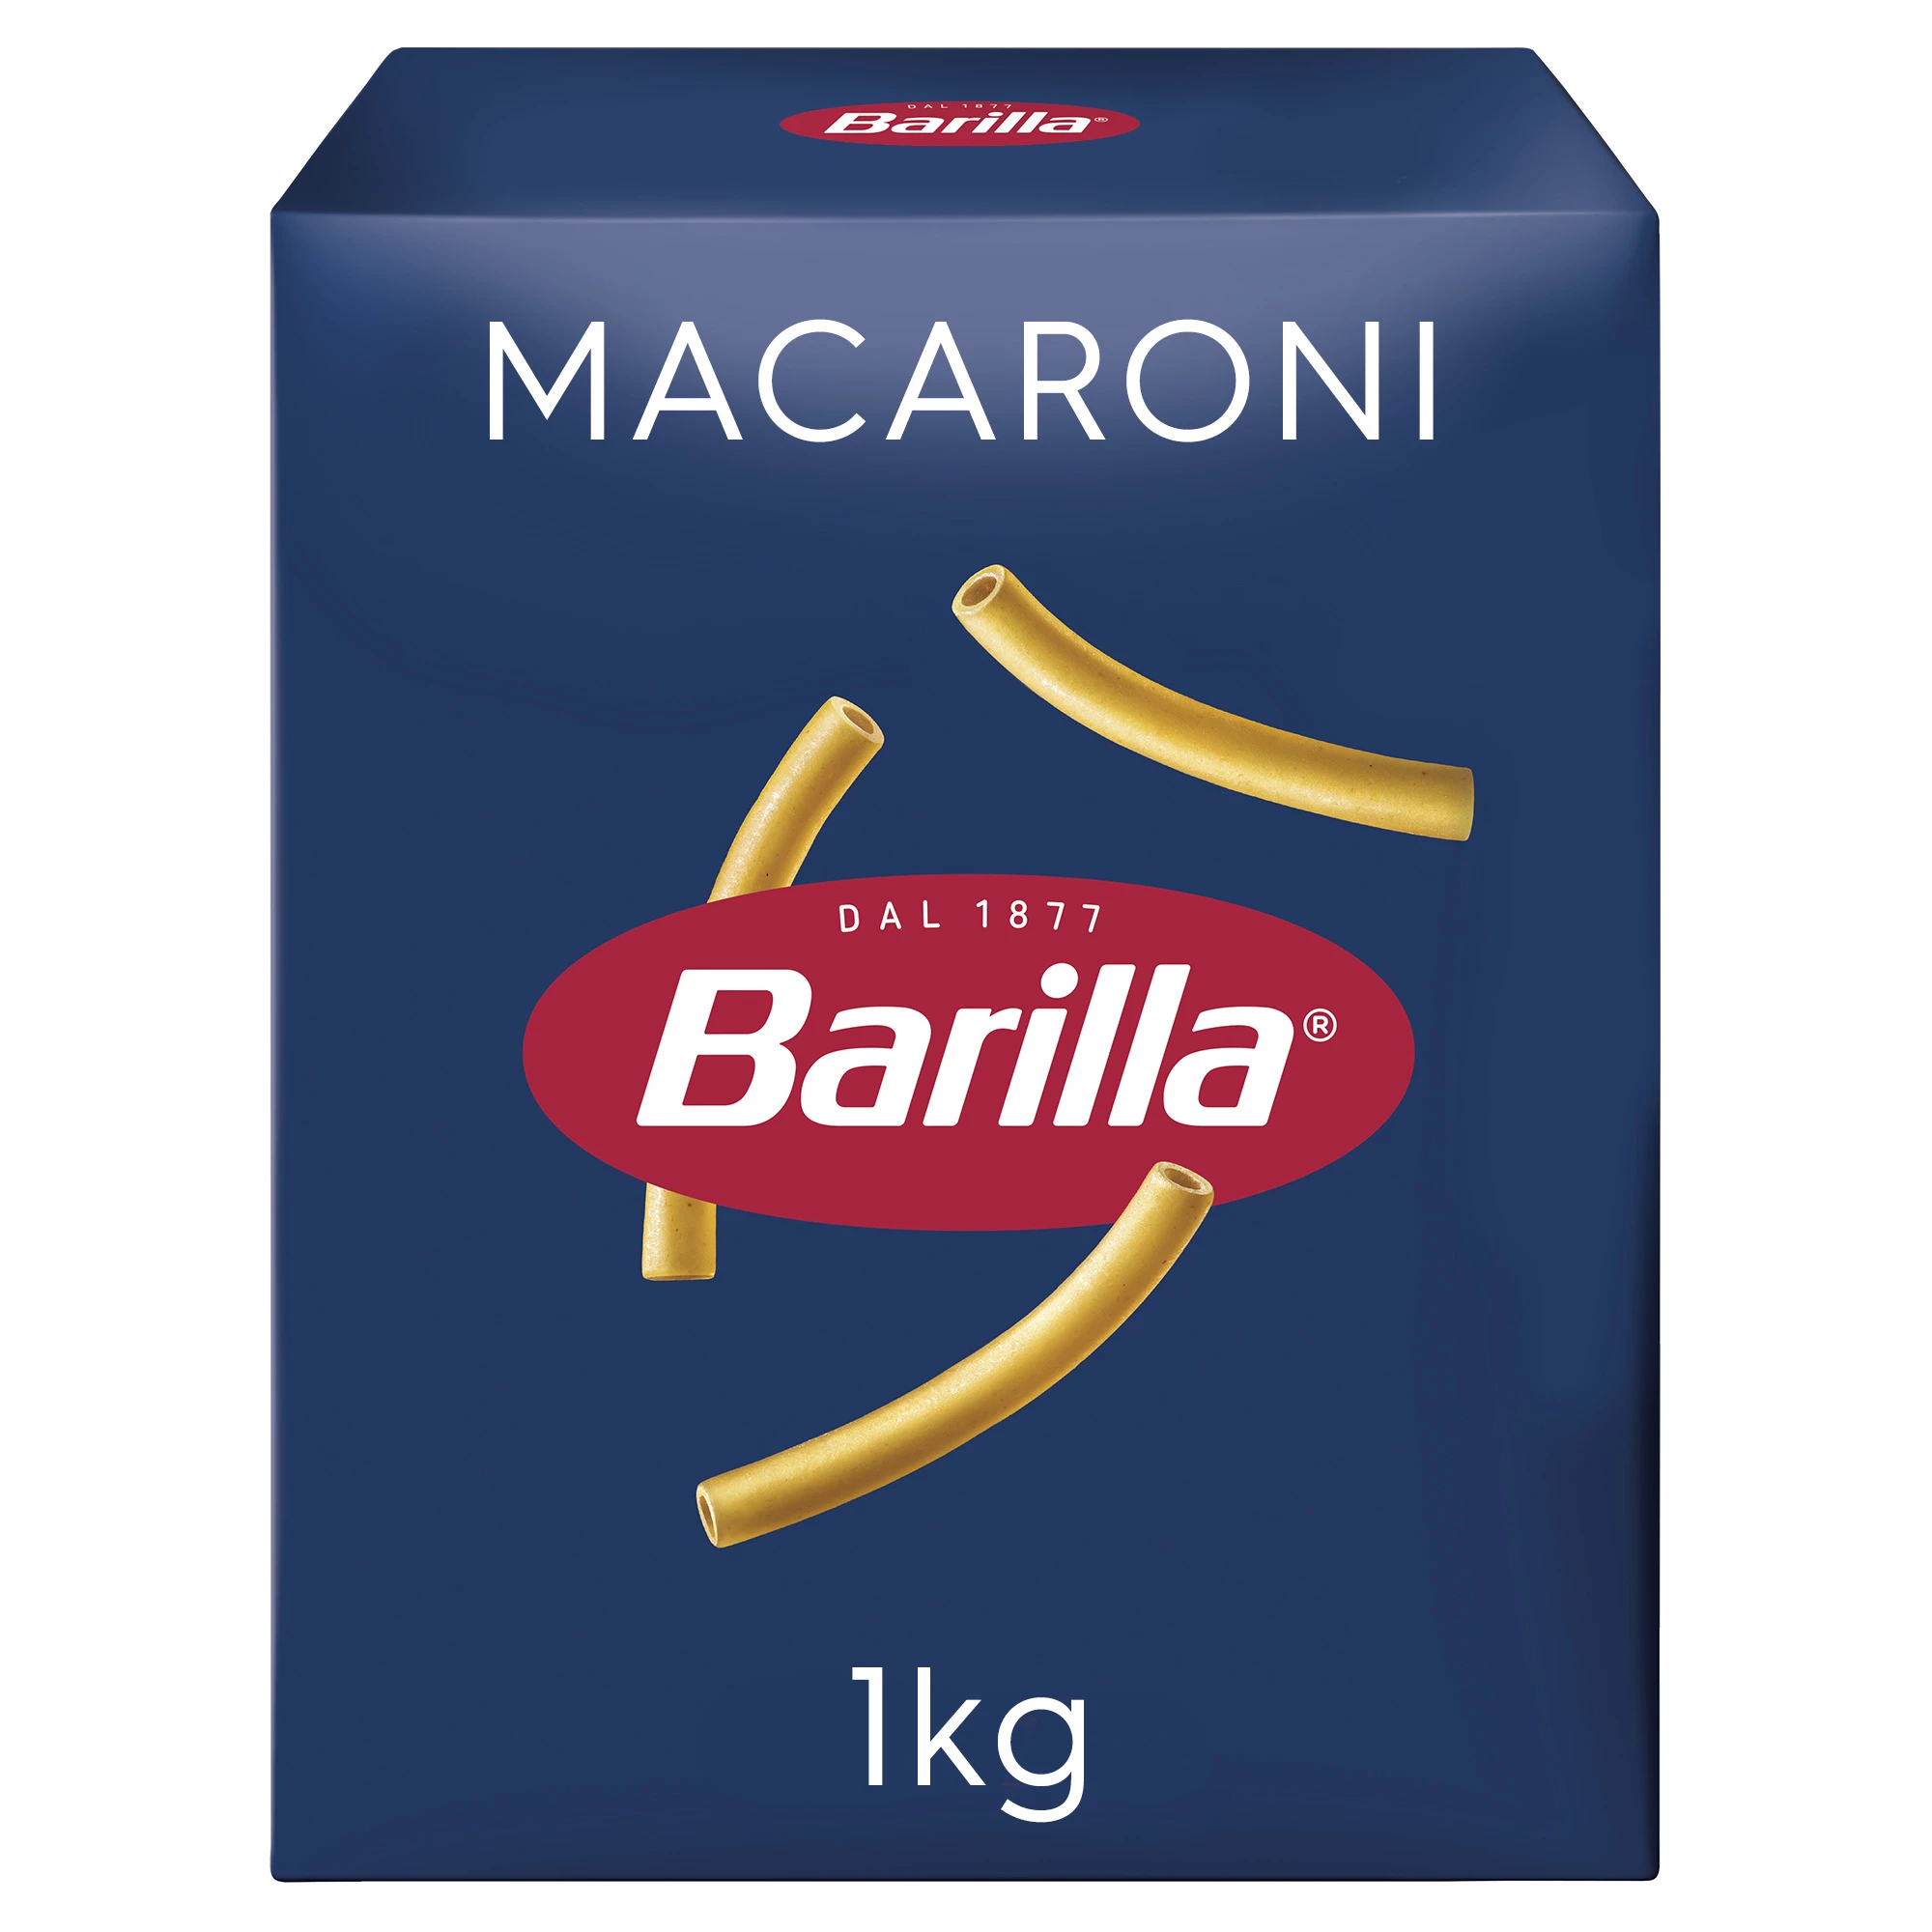 मैकरोनी पास्ता, 1 किलो - बैरिला